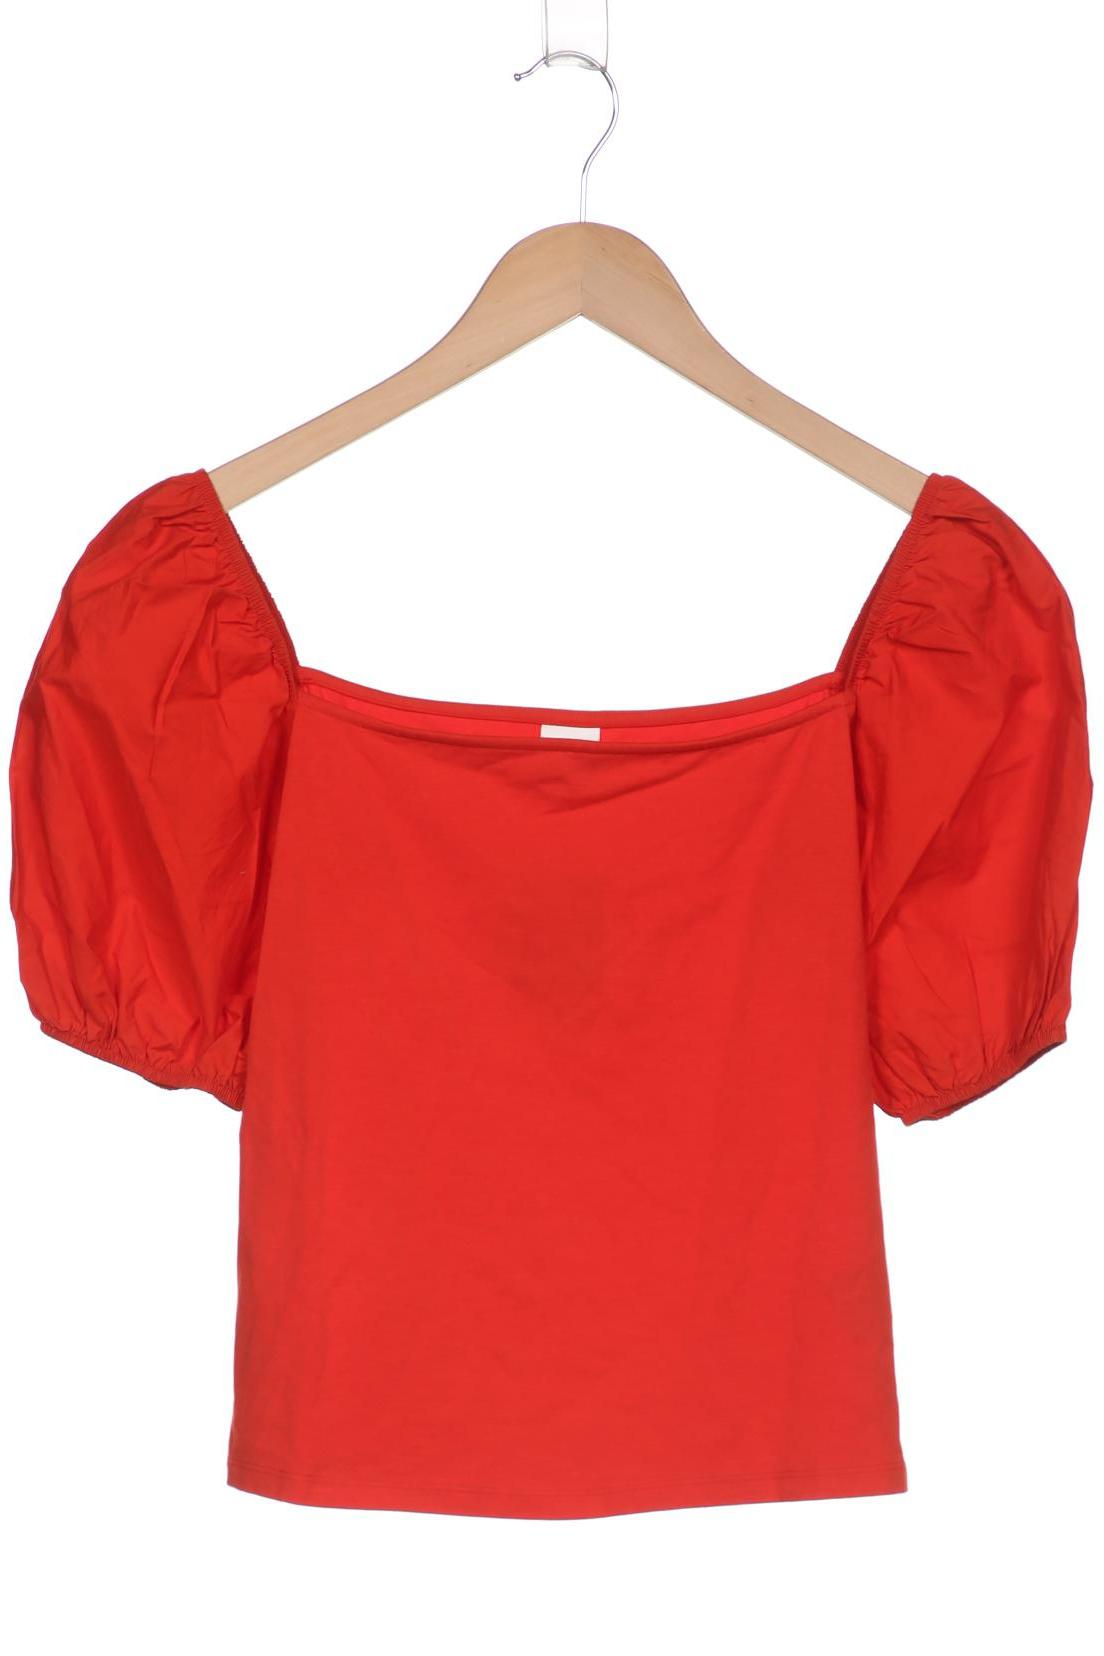 H&M Damen T-Shirt, rot, Gr. 38 von H&M